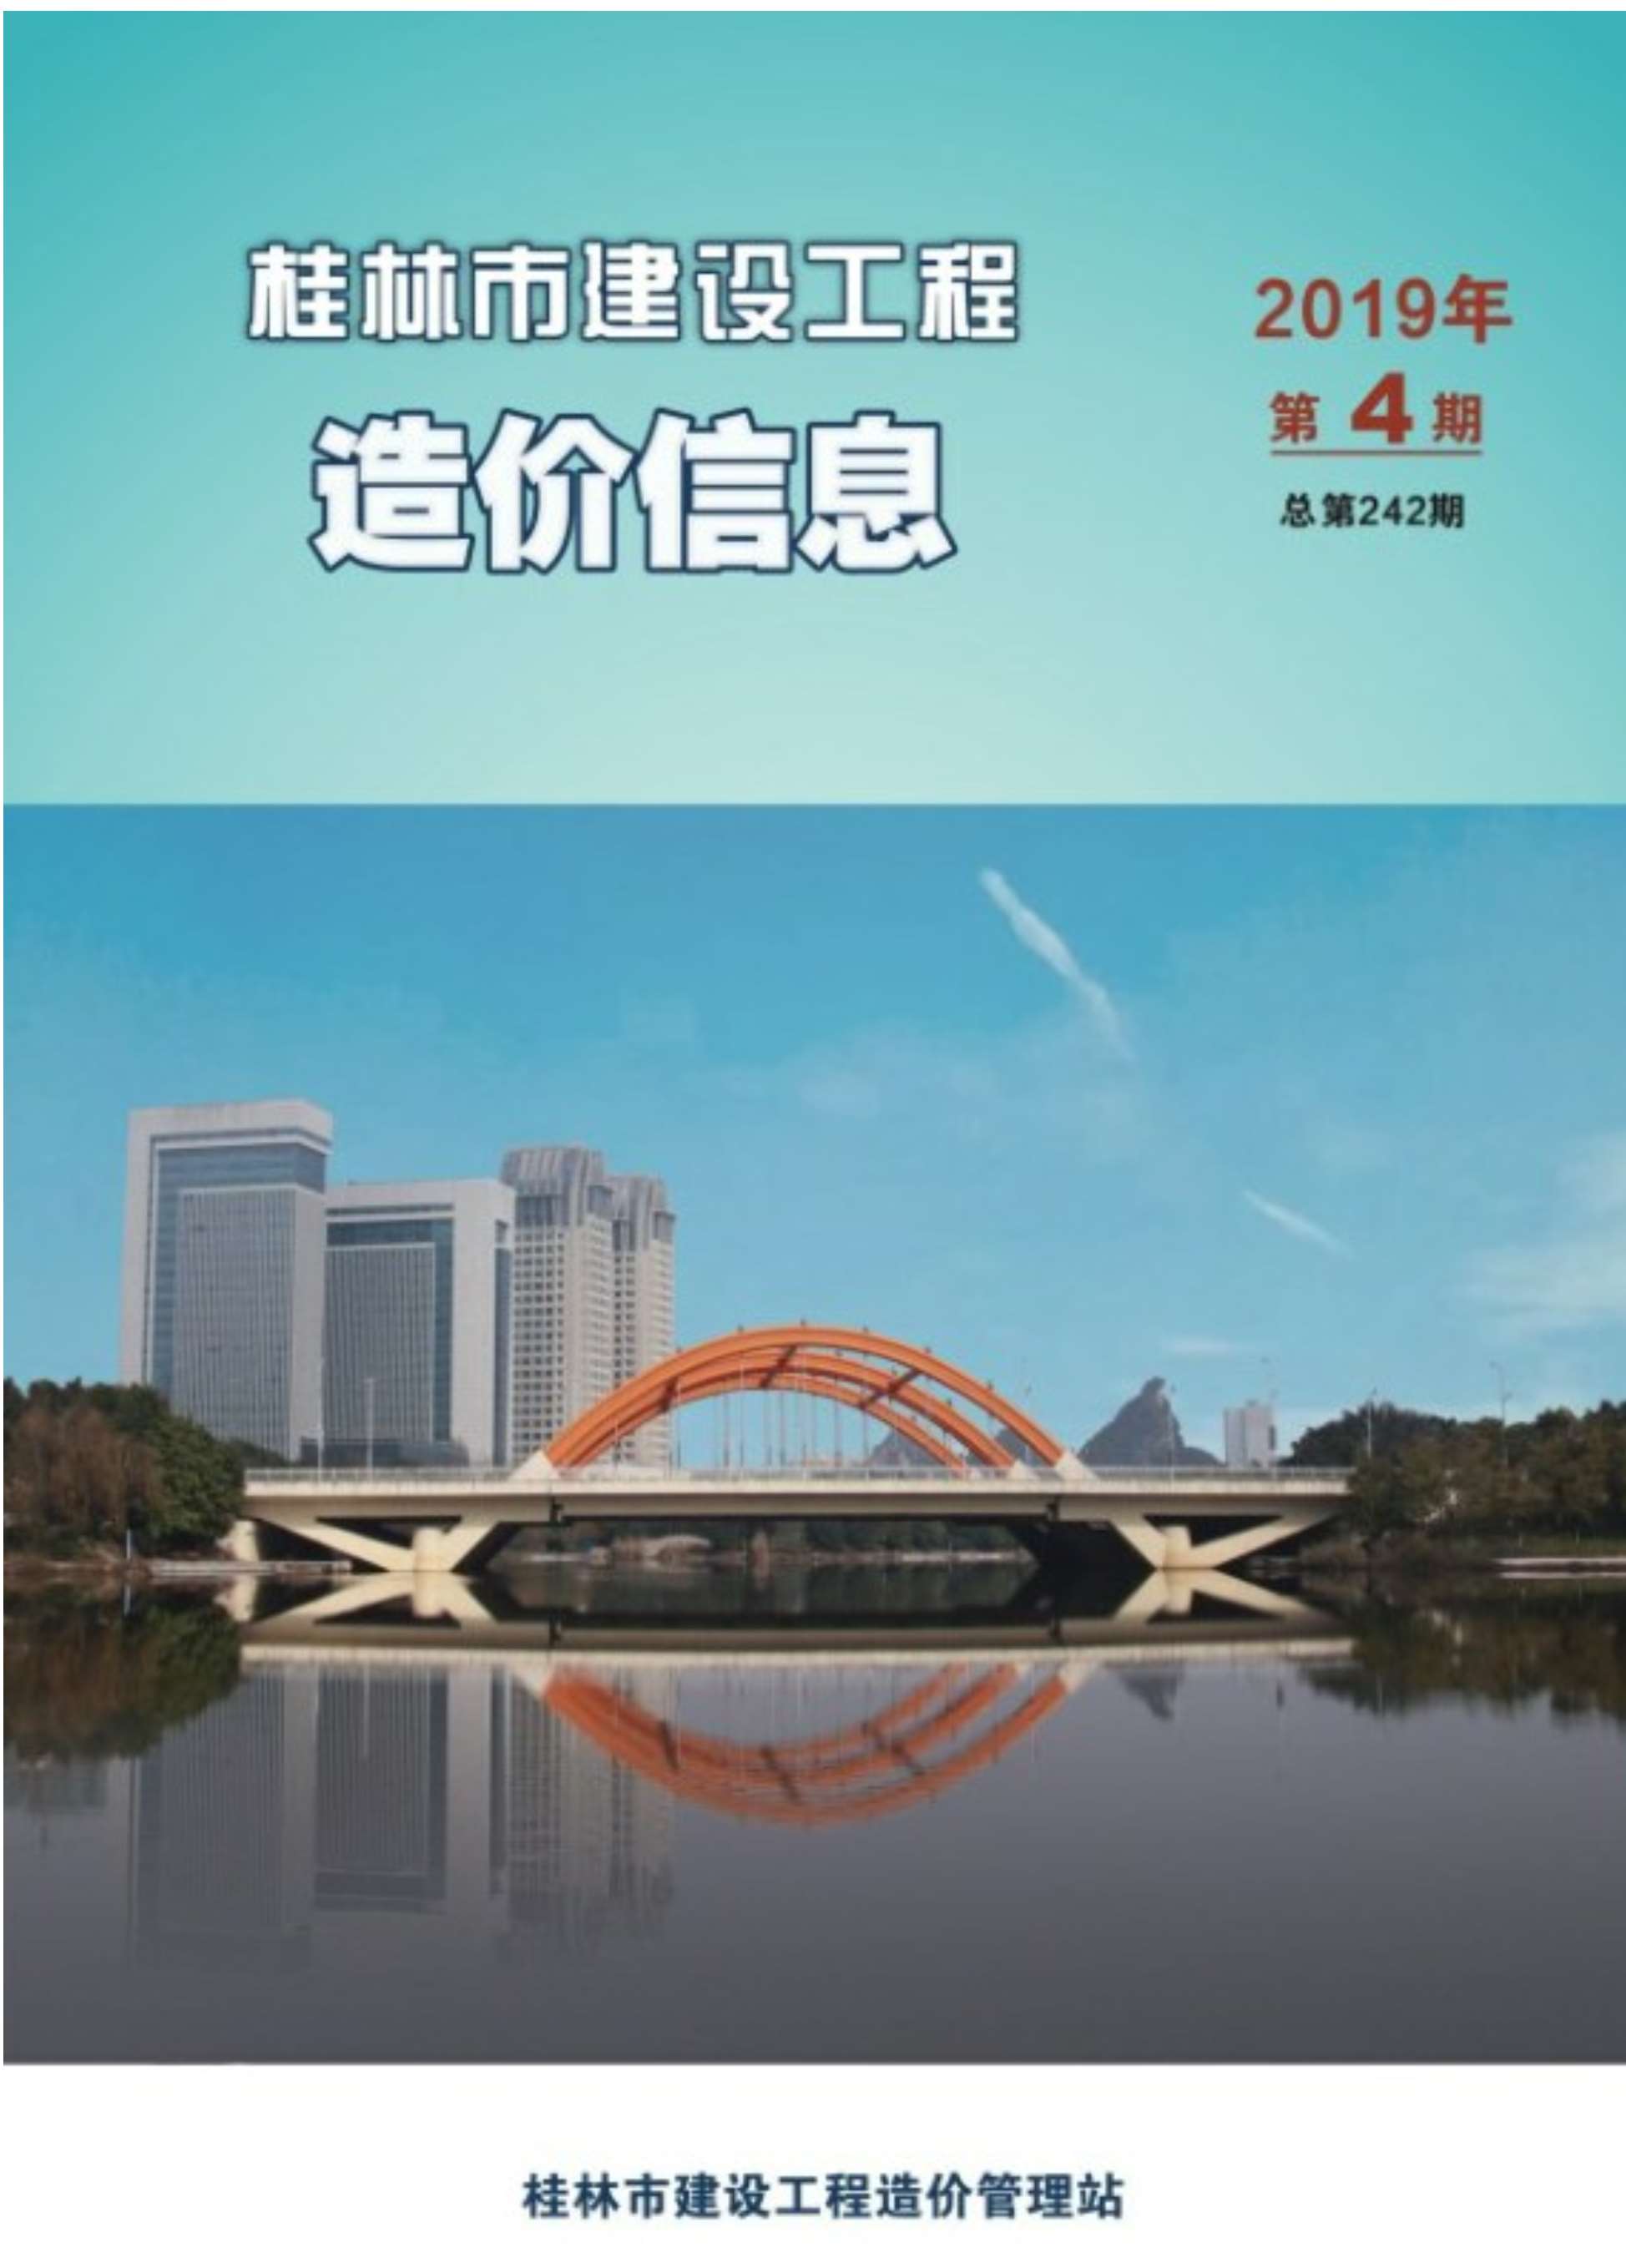 桂林市2019年4月工程信息价_桂林市信息价期刊PDF扫描件电子版